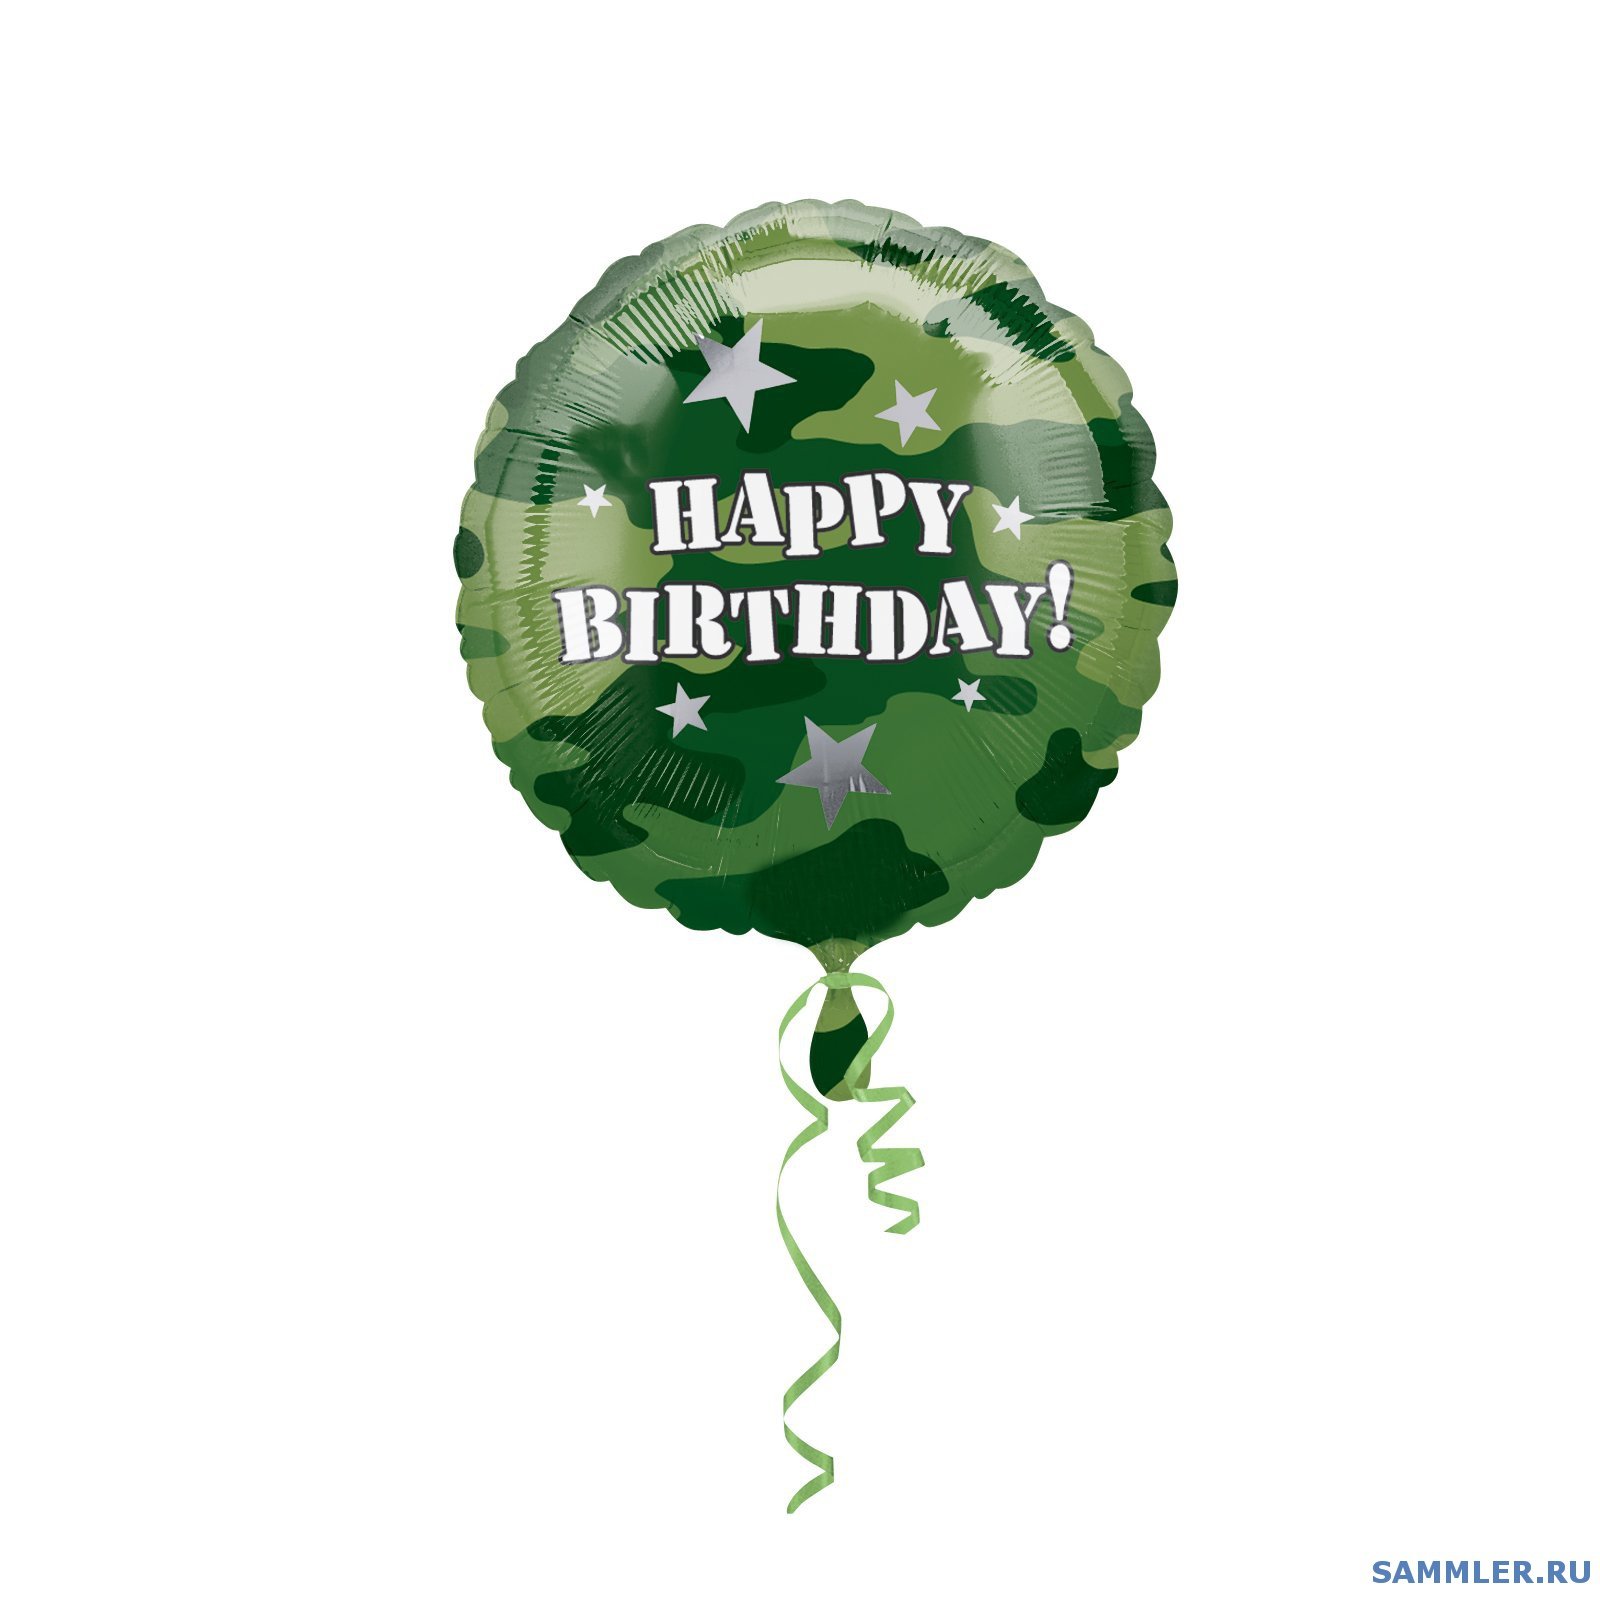 С днем рождения бойцу сво. Поздравления с днём рождения военному. Открытки с днём рождения мужчине военному. С днём рождения солдату в армию. ДС днем рождения мужчине военноиу.